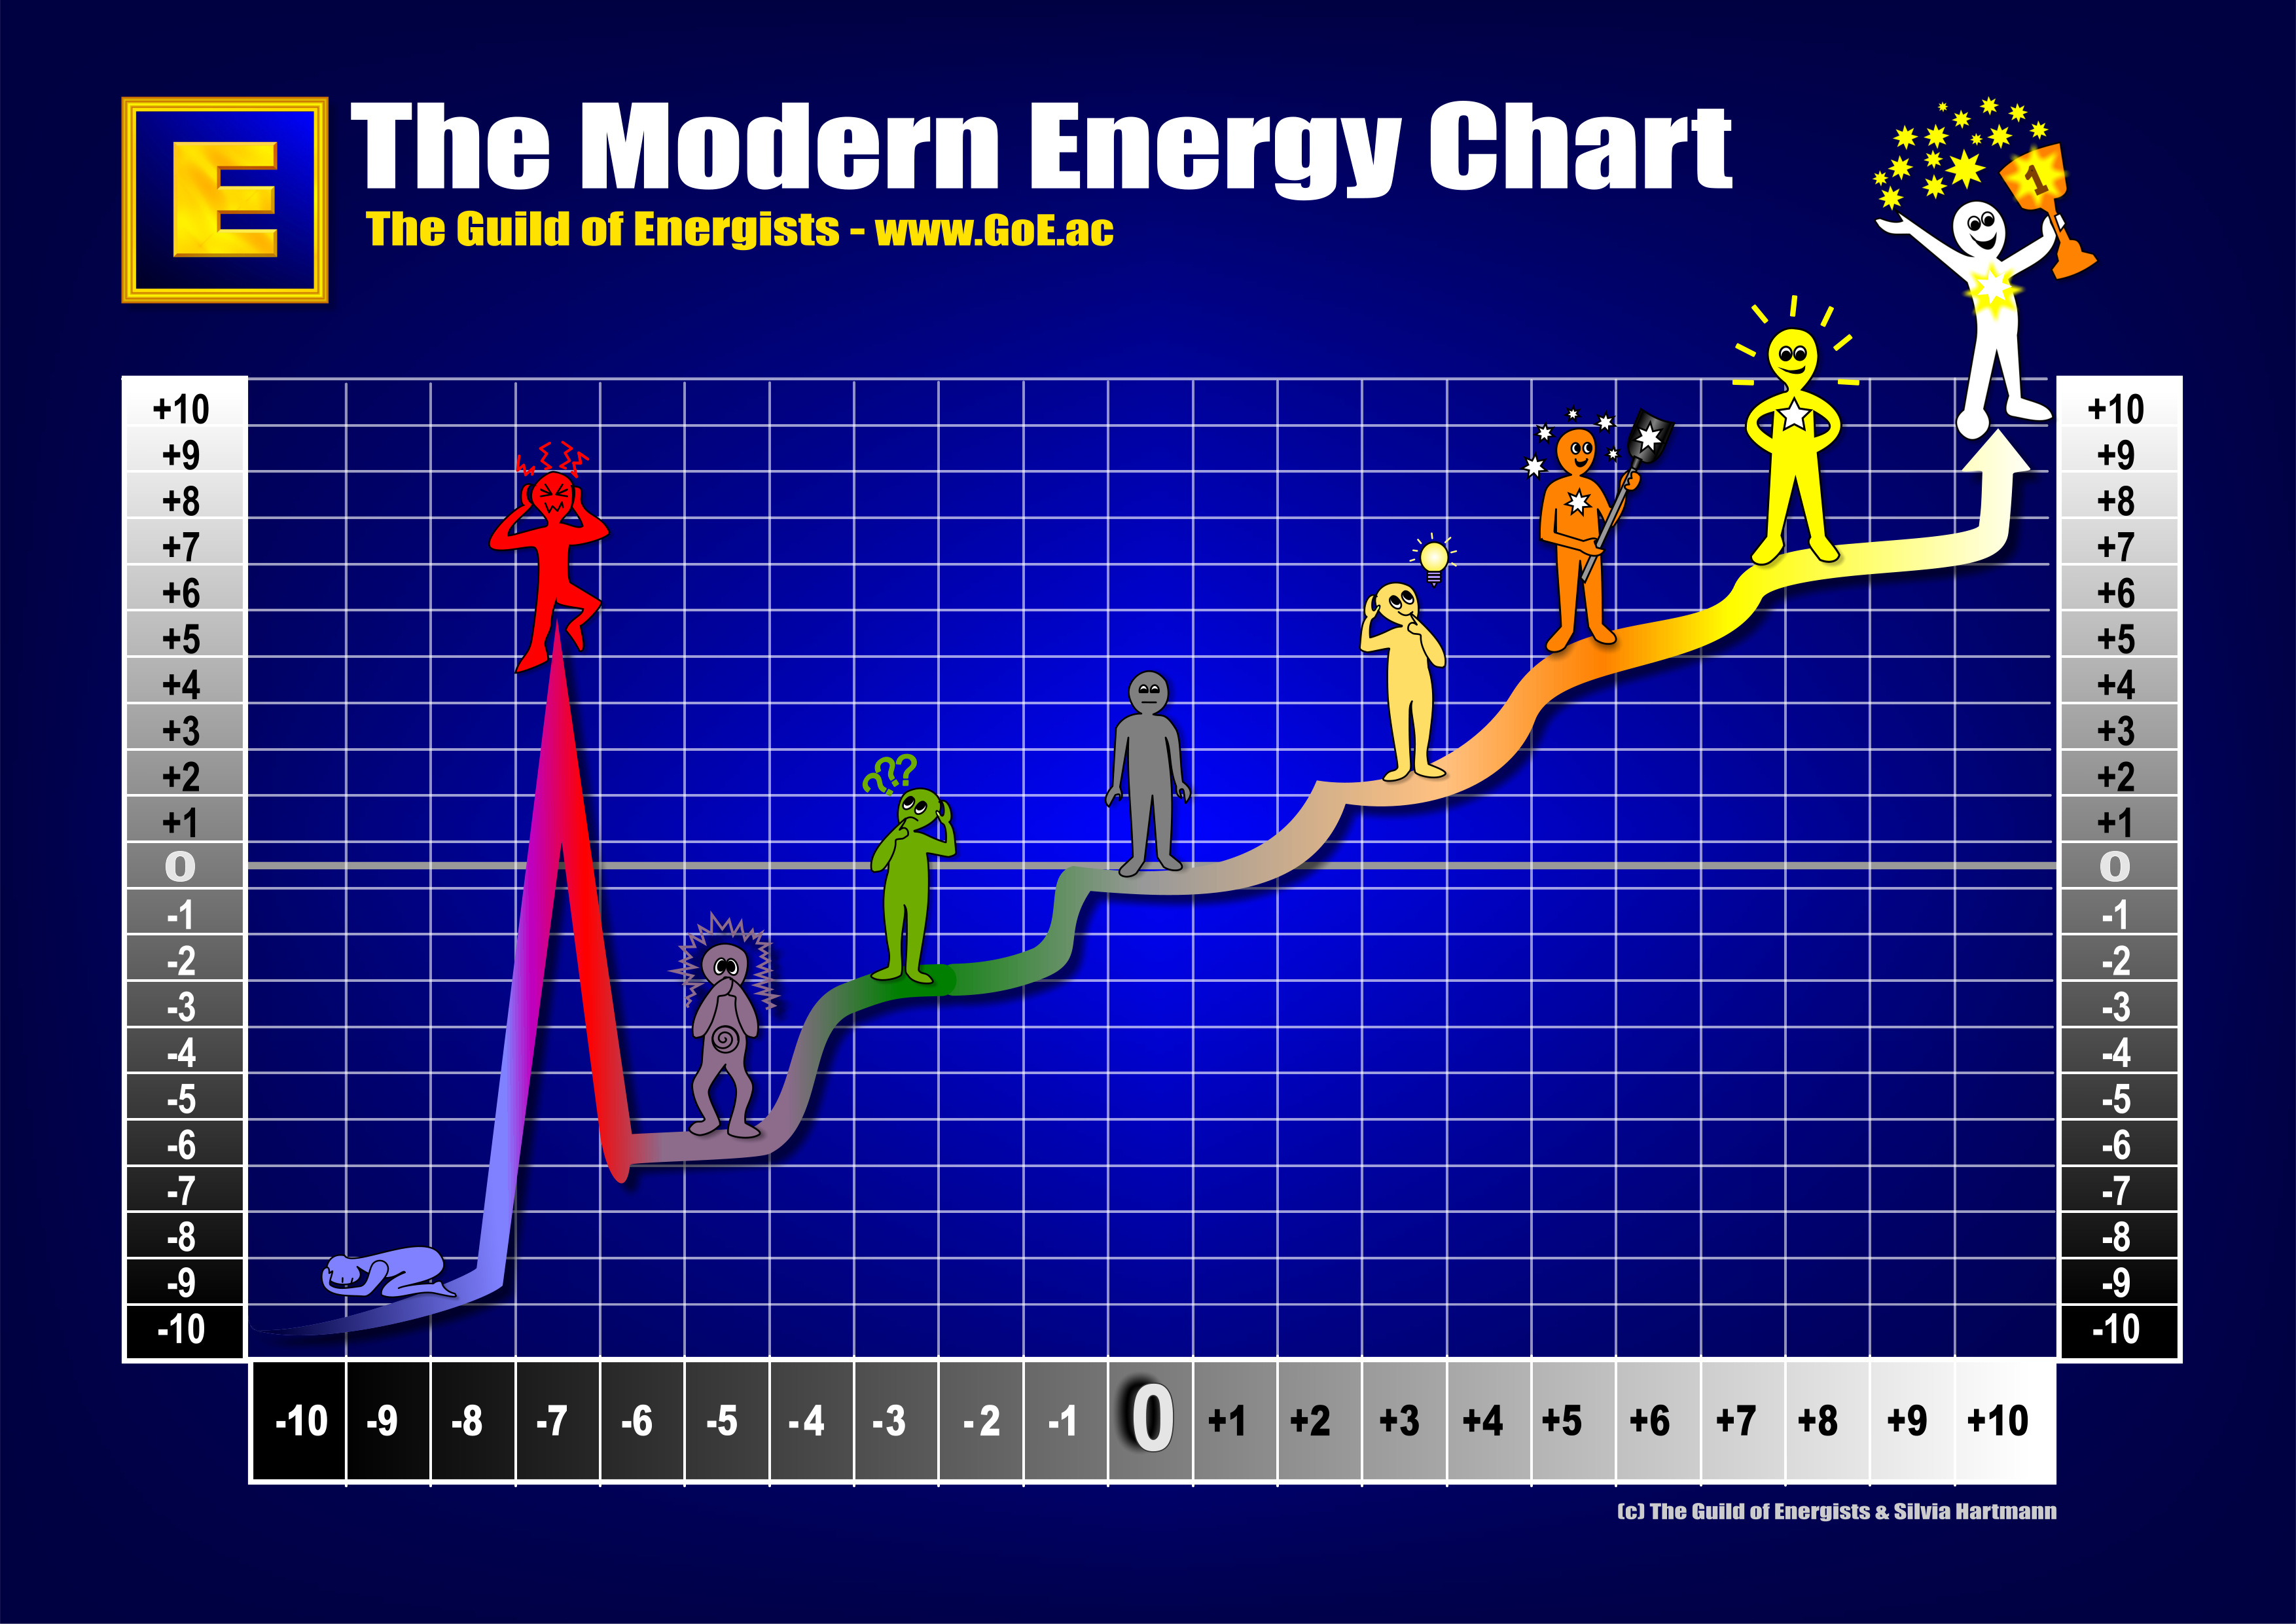 energy-chart-images-goe